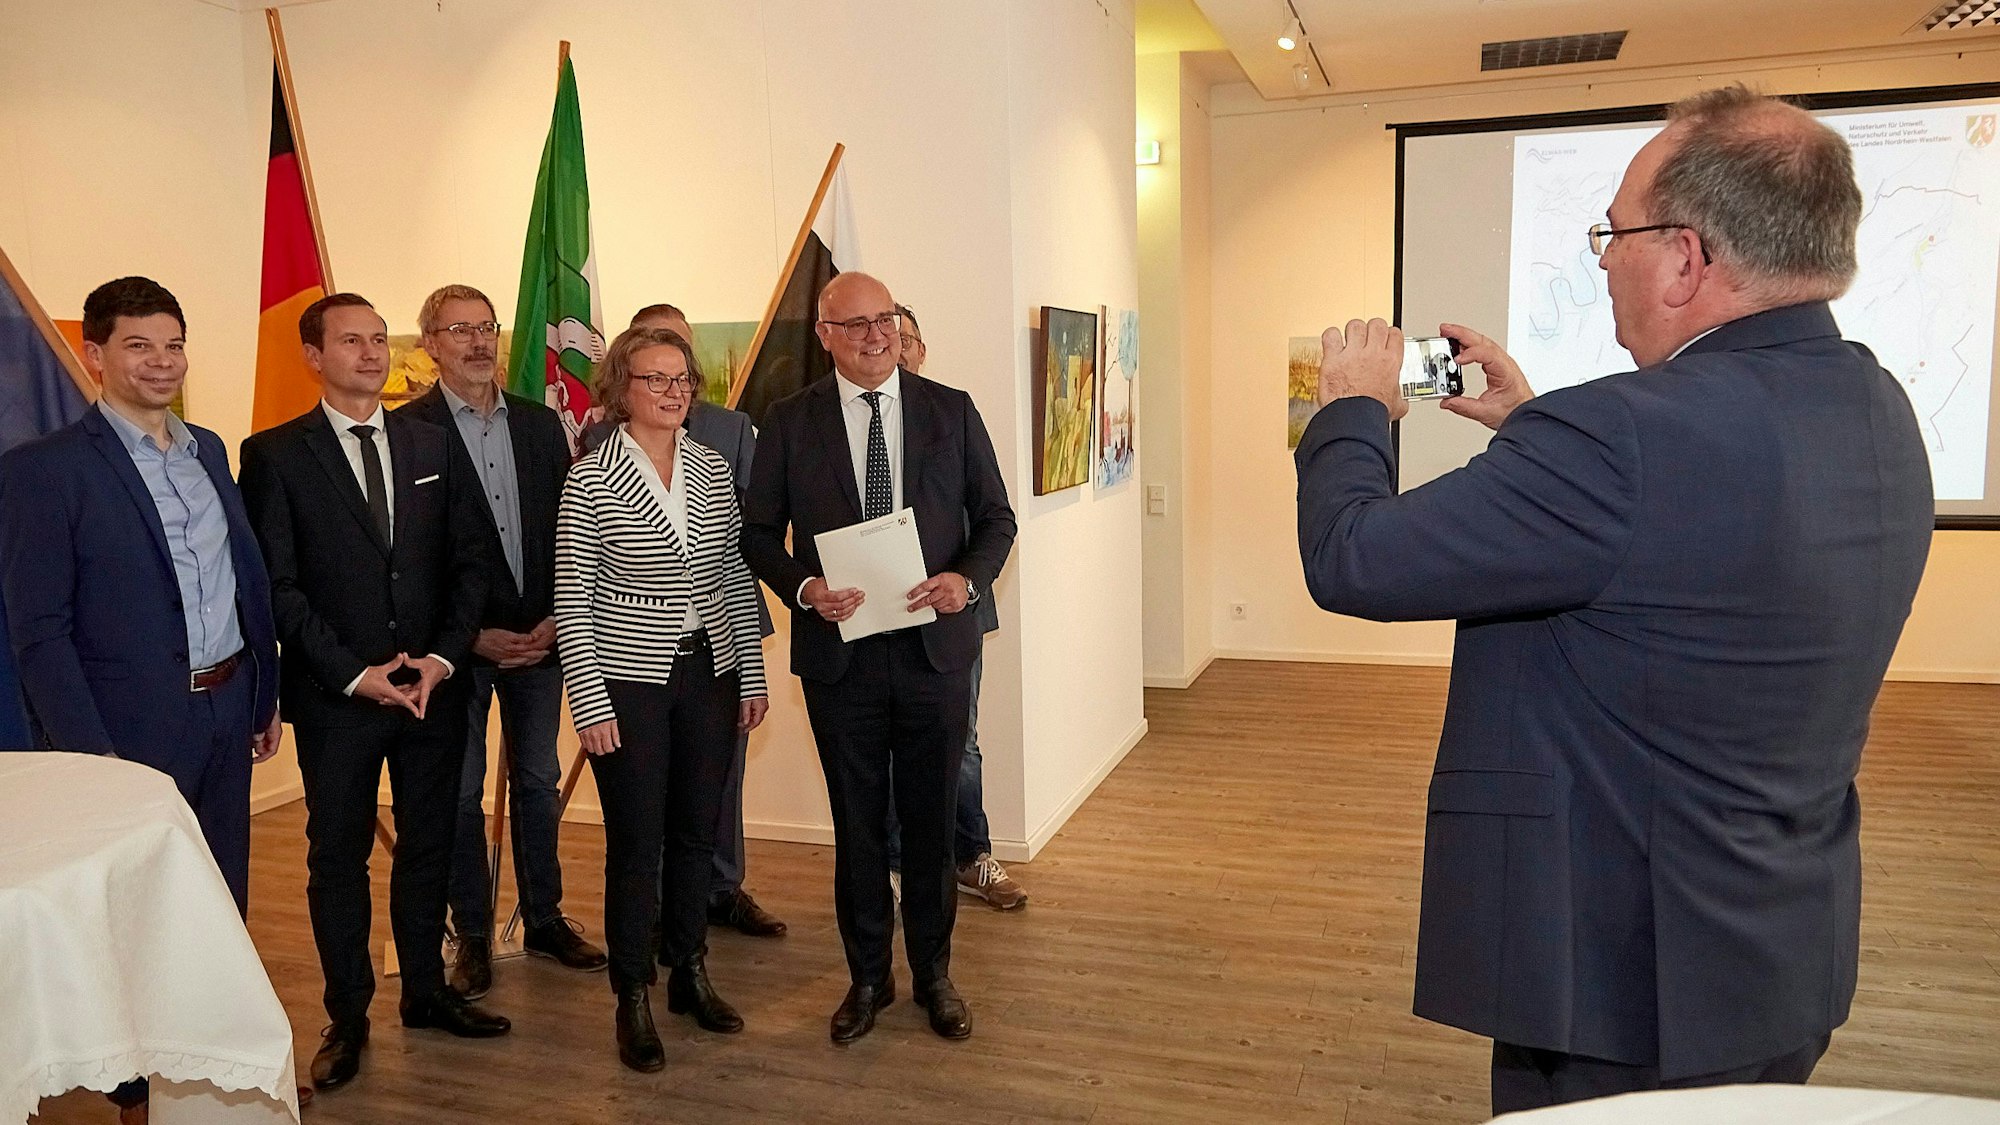 CDU-Landtagsmitglied Dr. Ralf Nolten macht ein Foto von Ministerin Ina Scharrenbach, Bürgermeister Jochen Weiler und Mitarbeitern der Verwaltung. Weiler hält den Bewilligungsbescheid in den Händen.